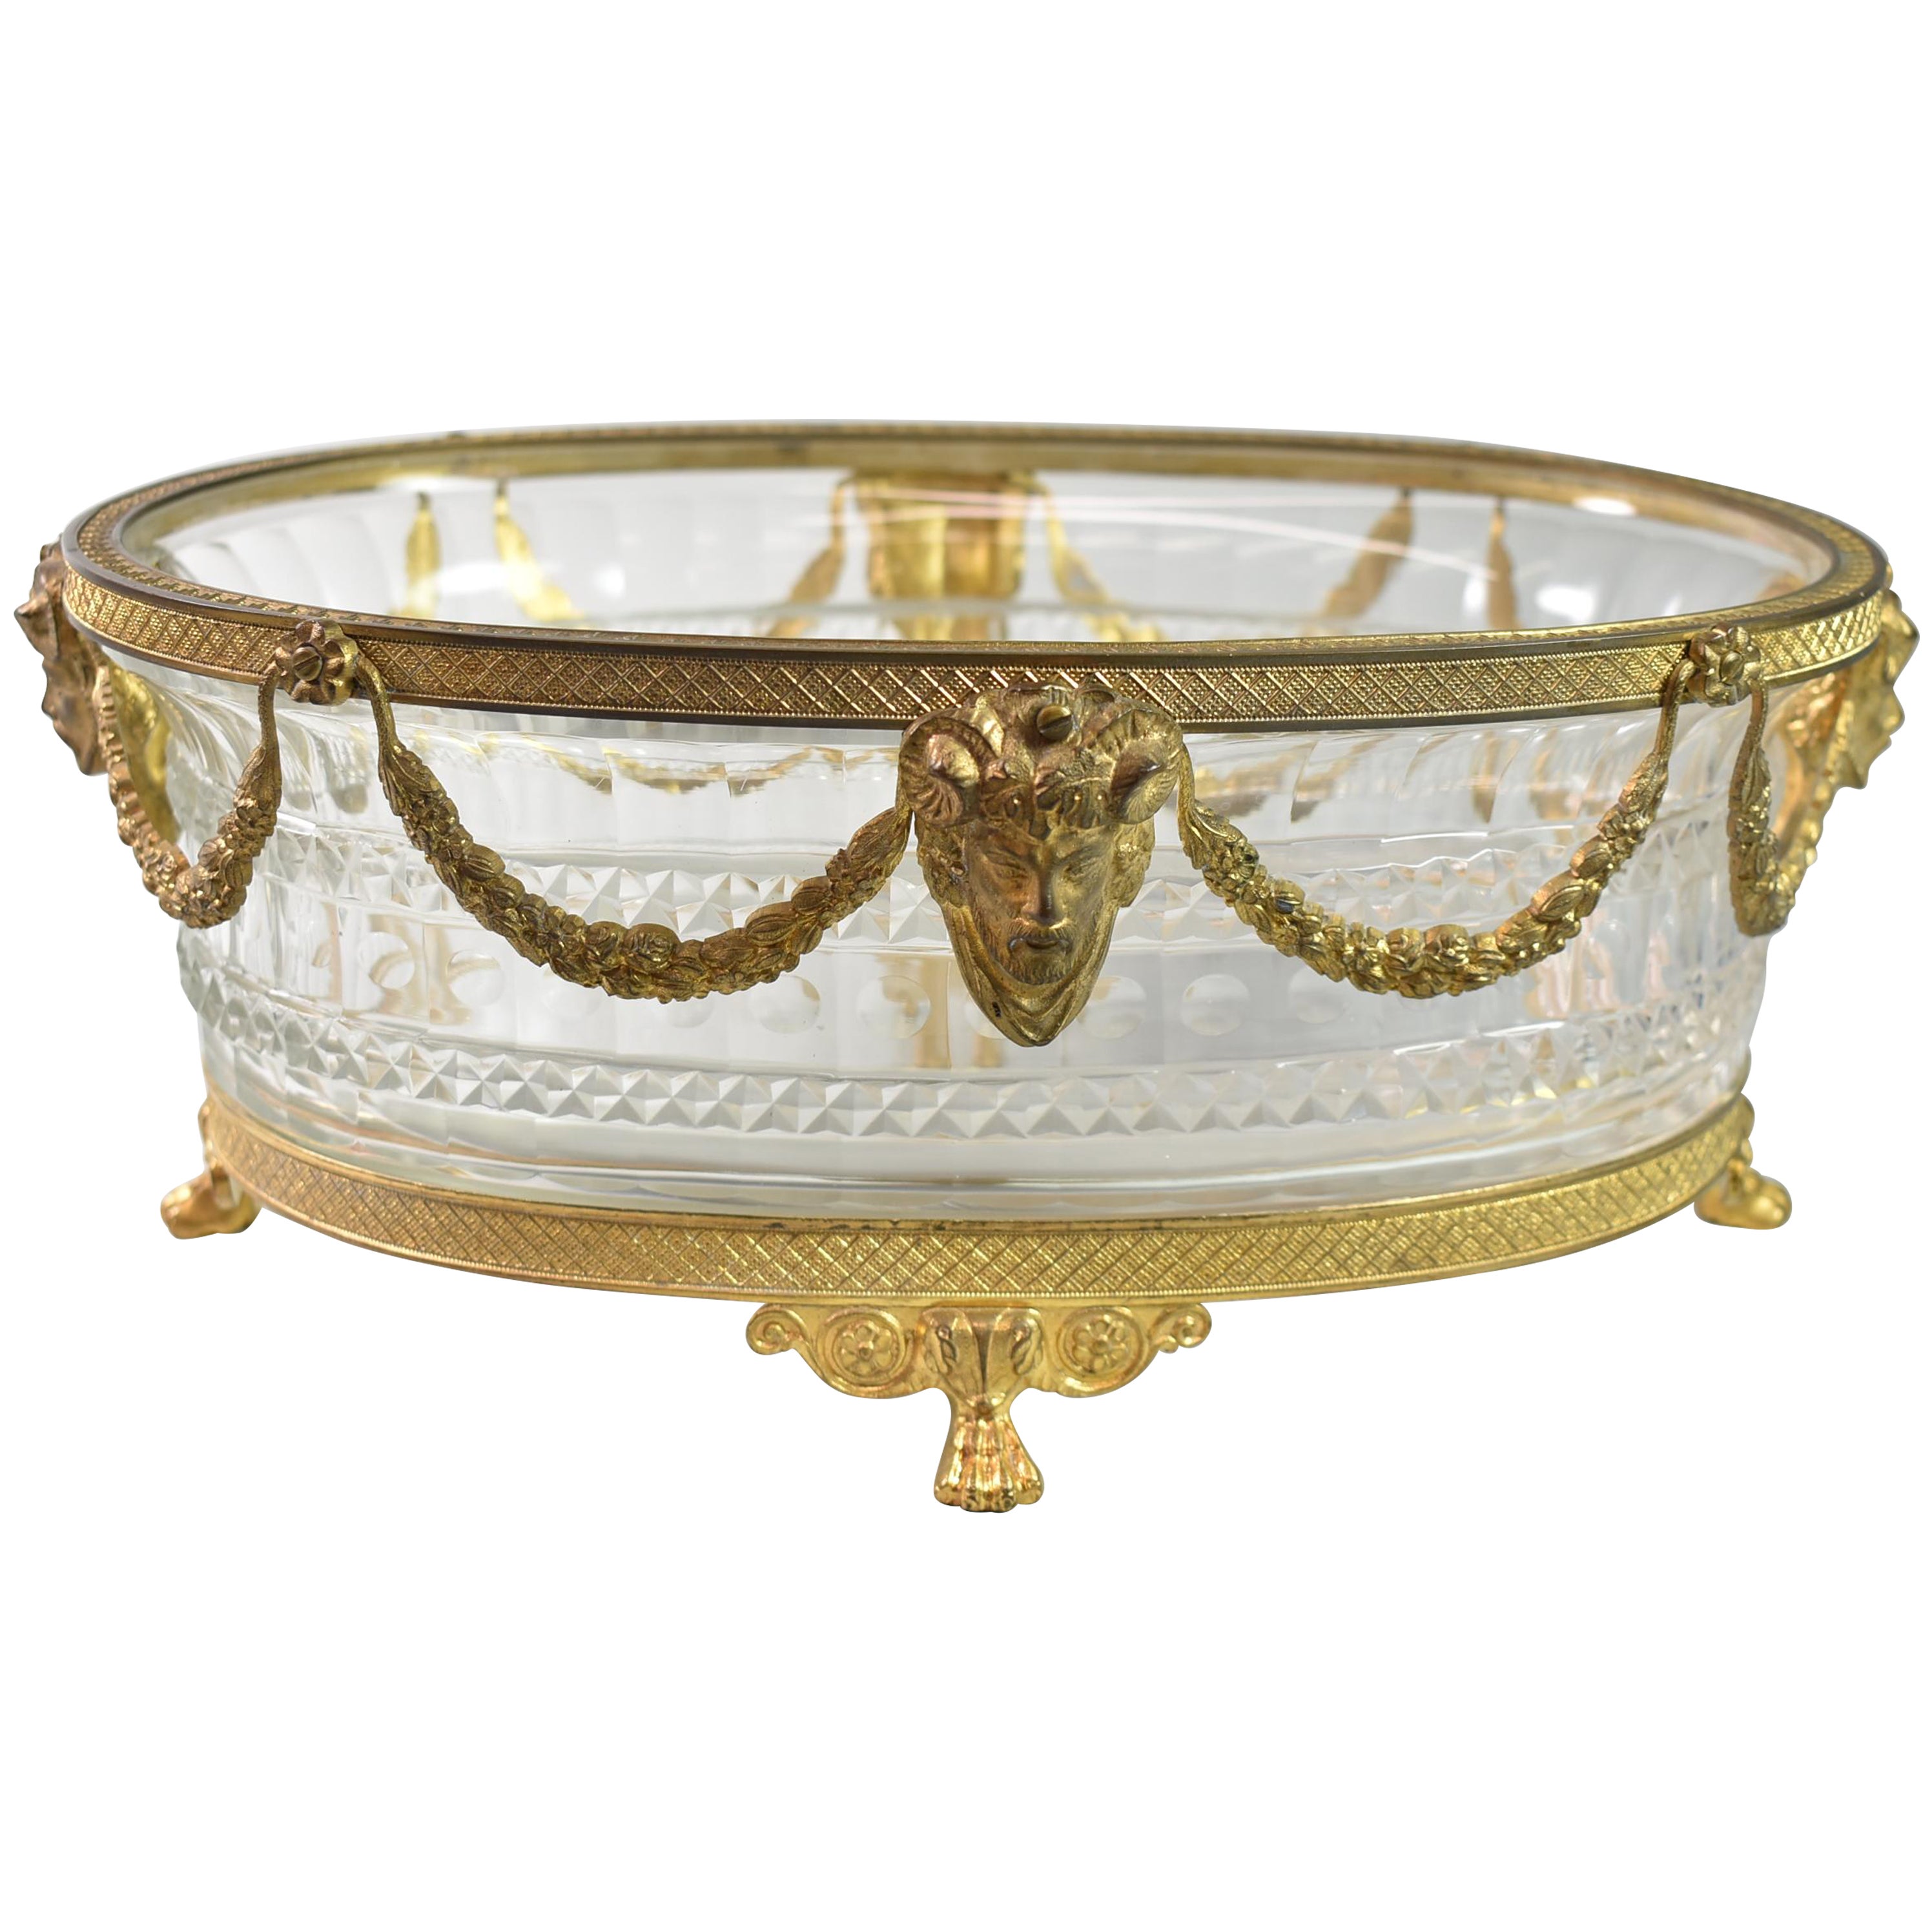 Bol de centre de table autrichien à pieds ovales en cristal et bronze doré